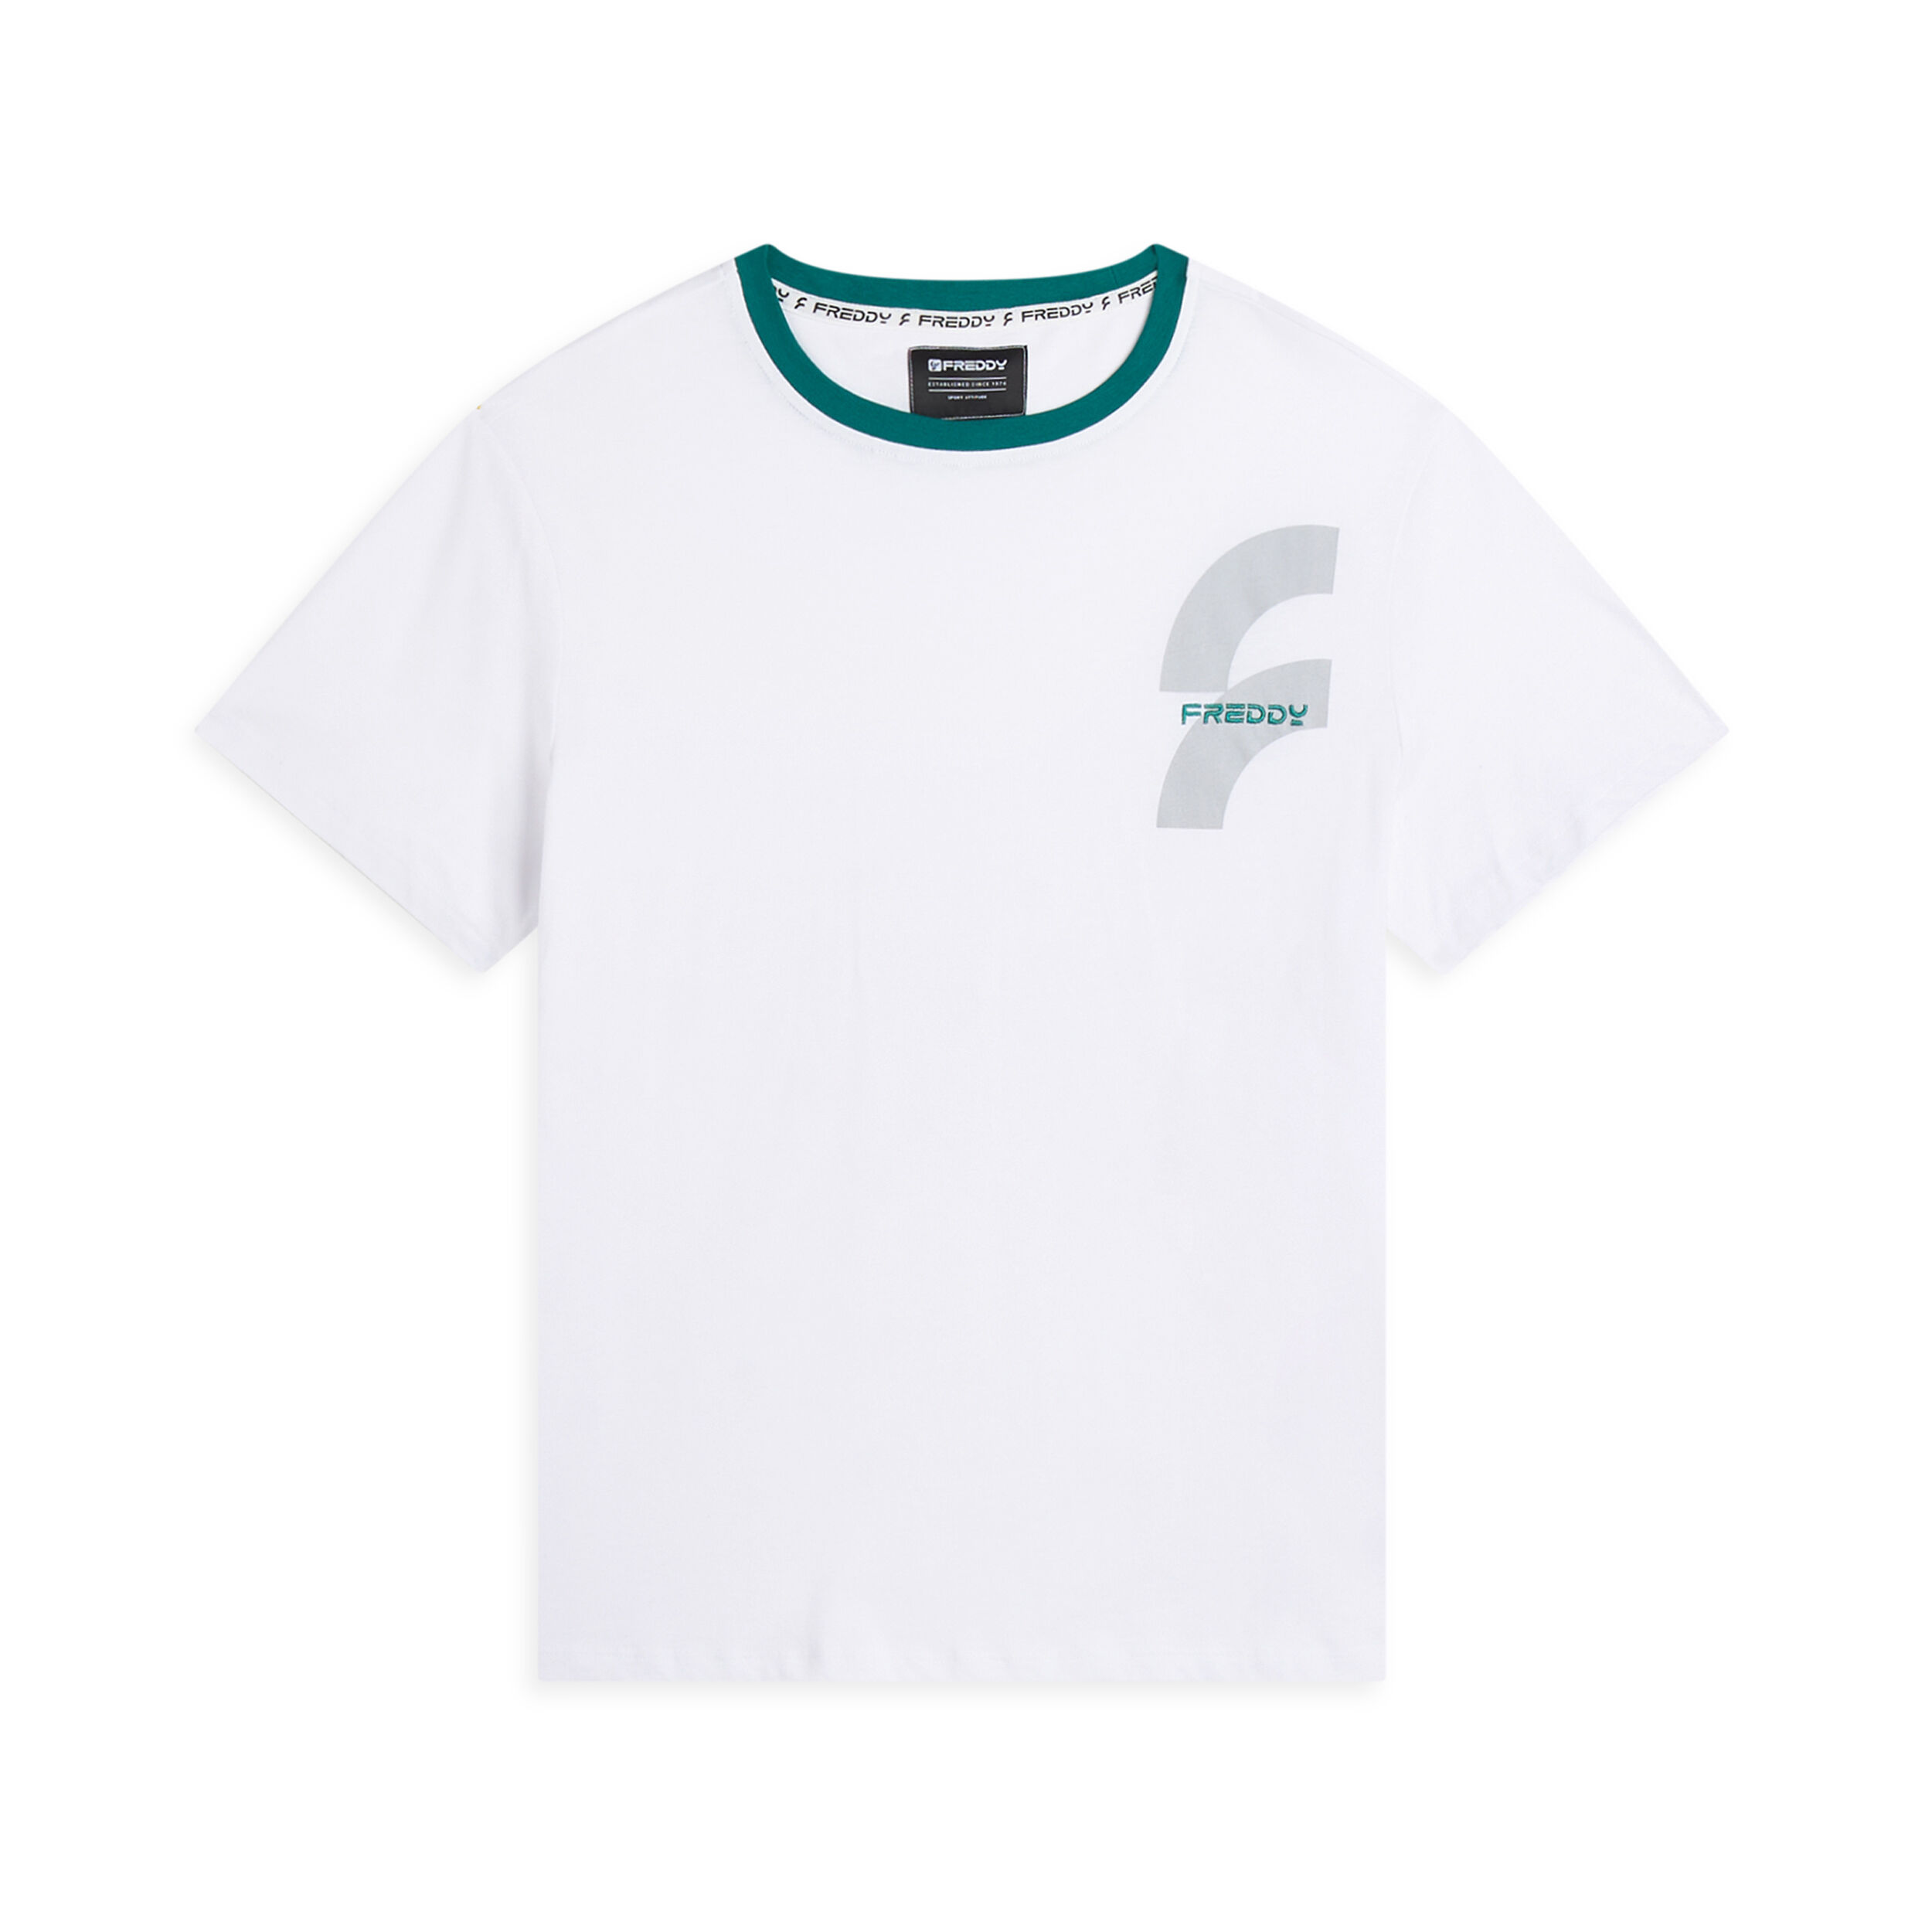 Freddy T-shirt da uomo con maxi logo lato cuore in tono colore Bianco Uomo Medium